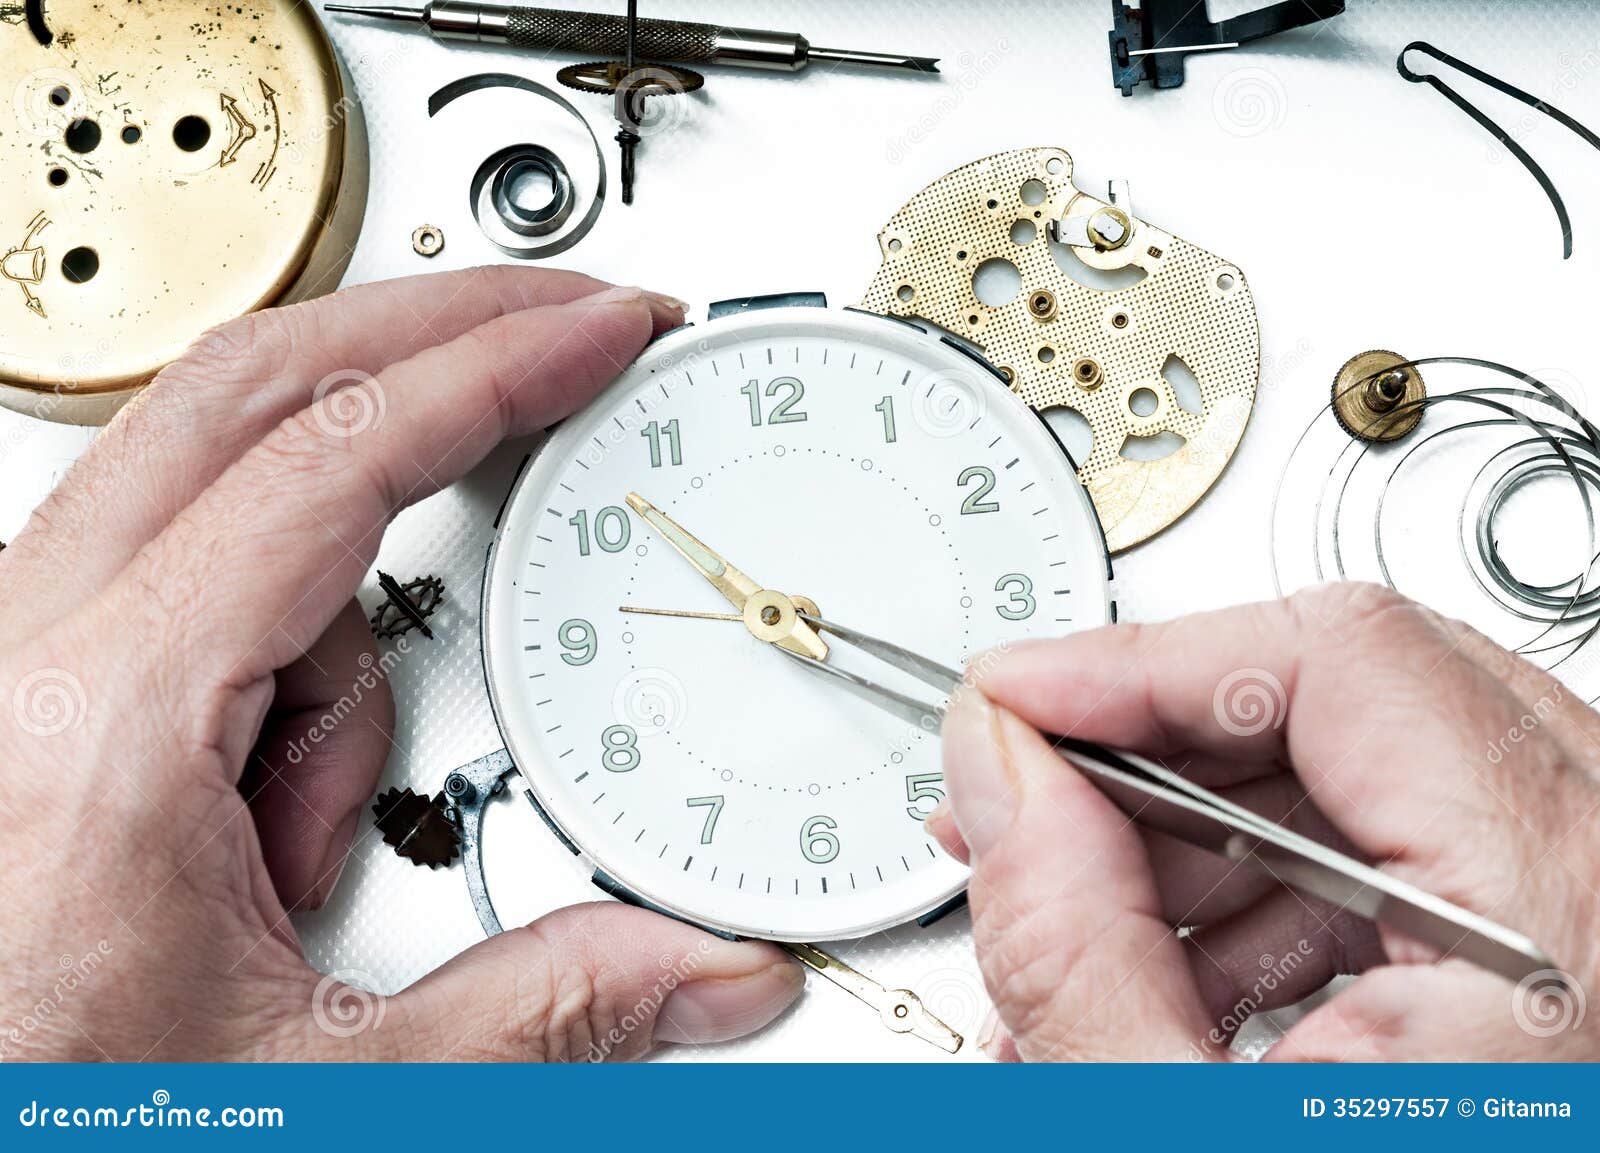 Фирма занимается ремонтом часов приобретение комплектующих. Часовой сервис. Ремонт часов картинки. Реставрация ручных часов. Часовая мастерская футаж.